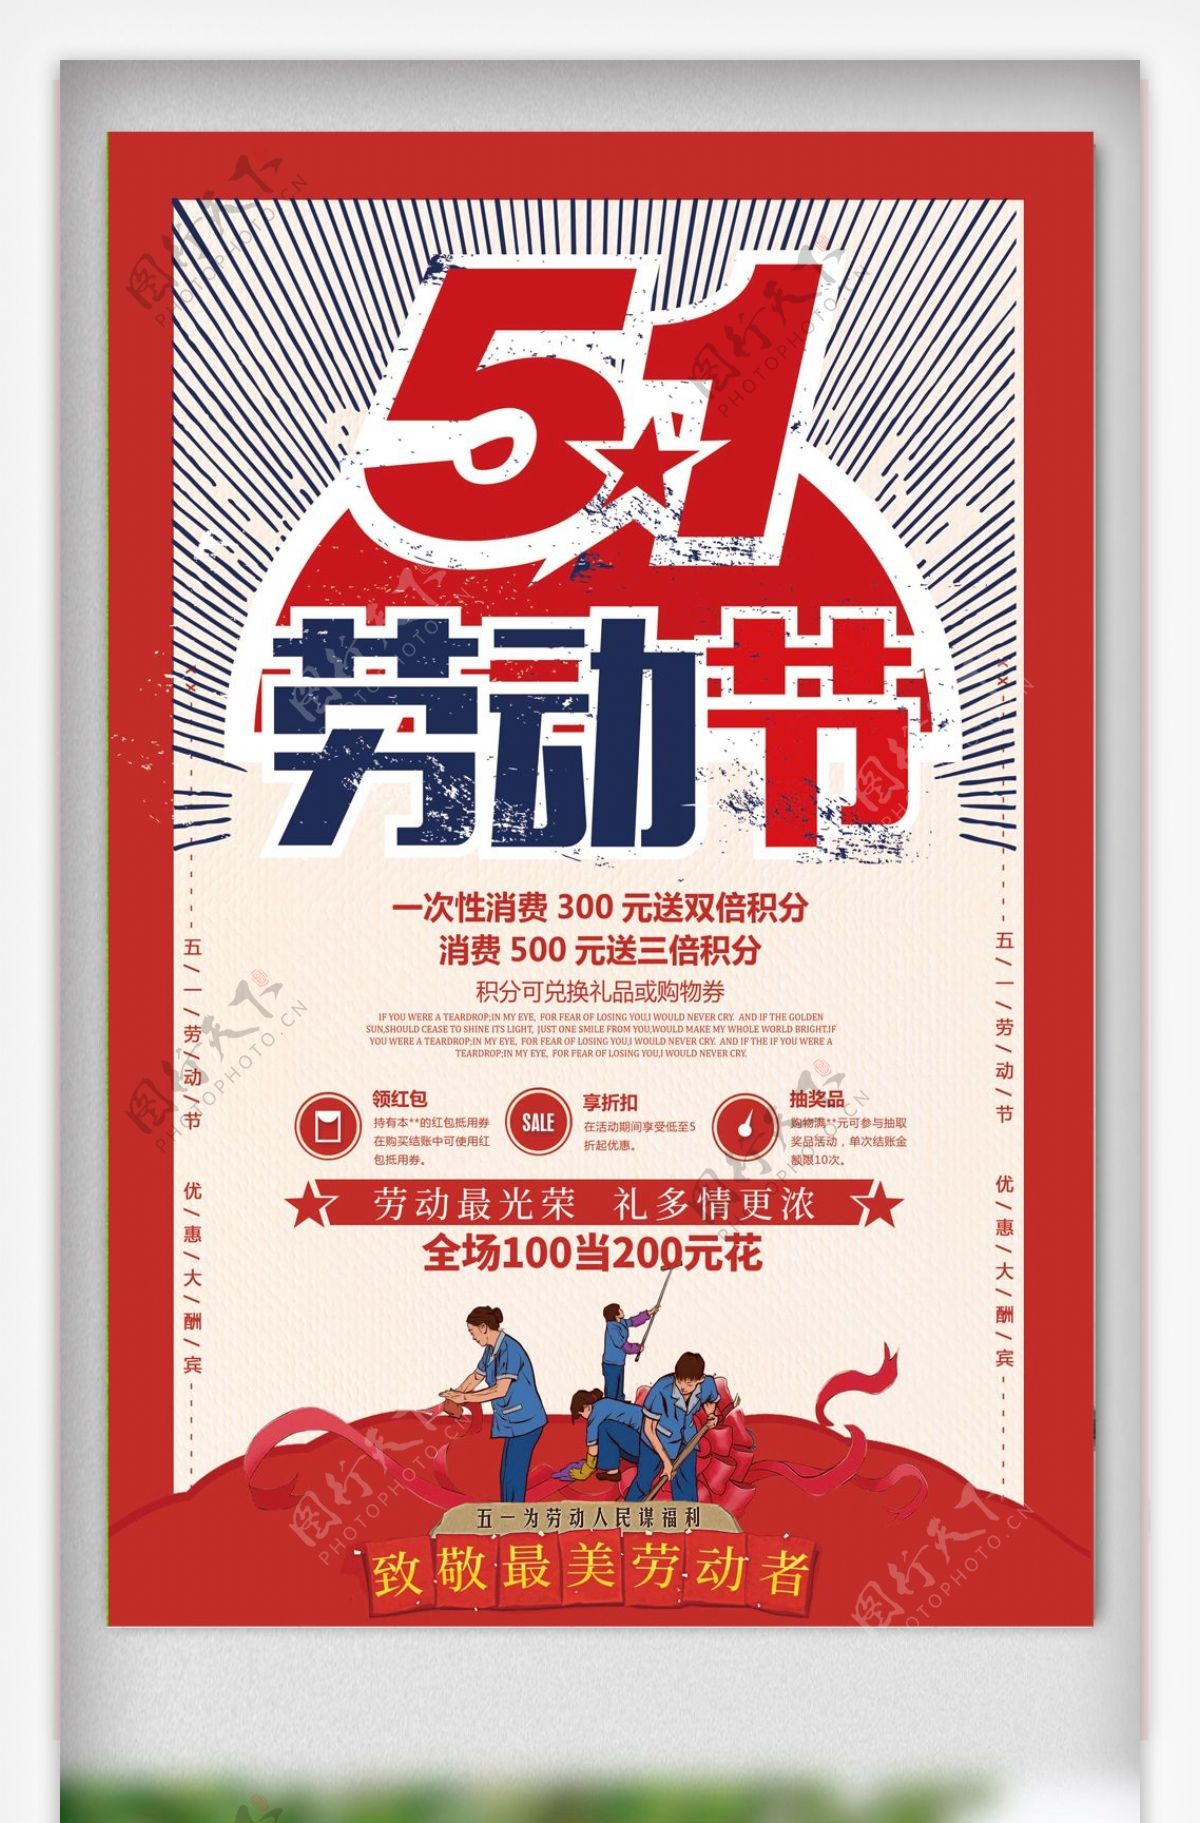 中国传统节日劳动节海报设计